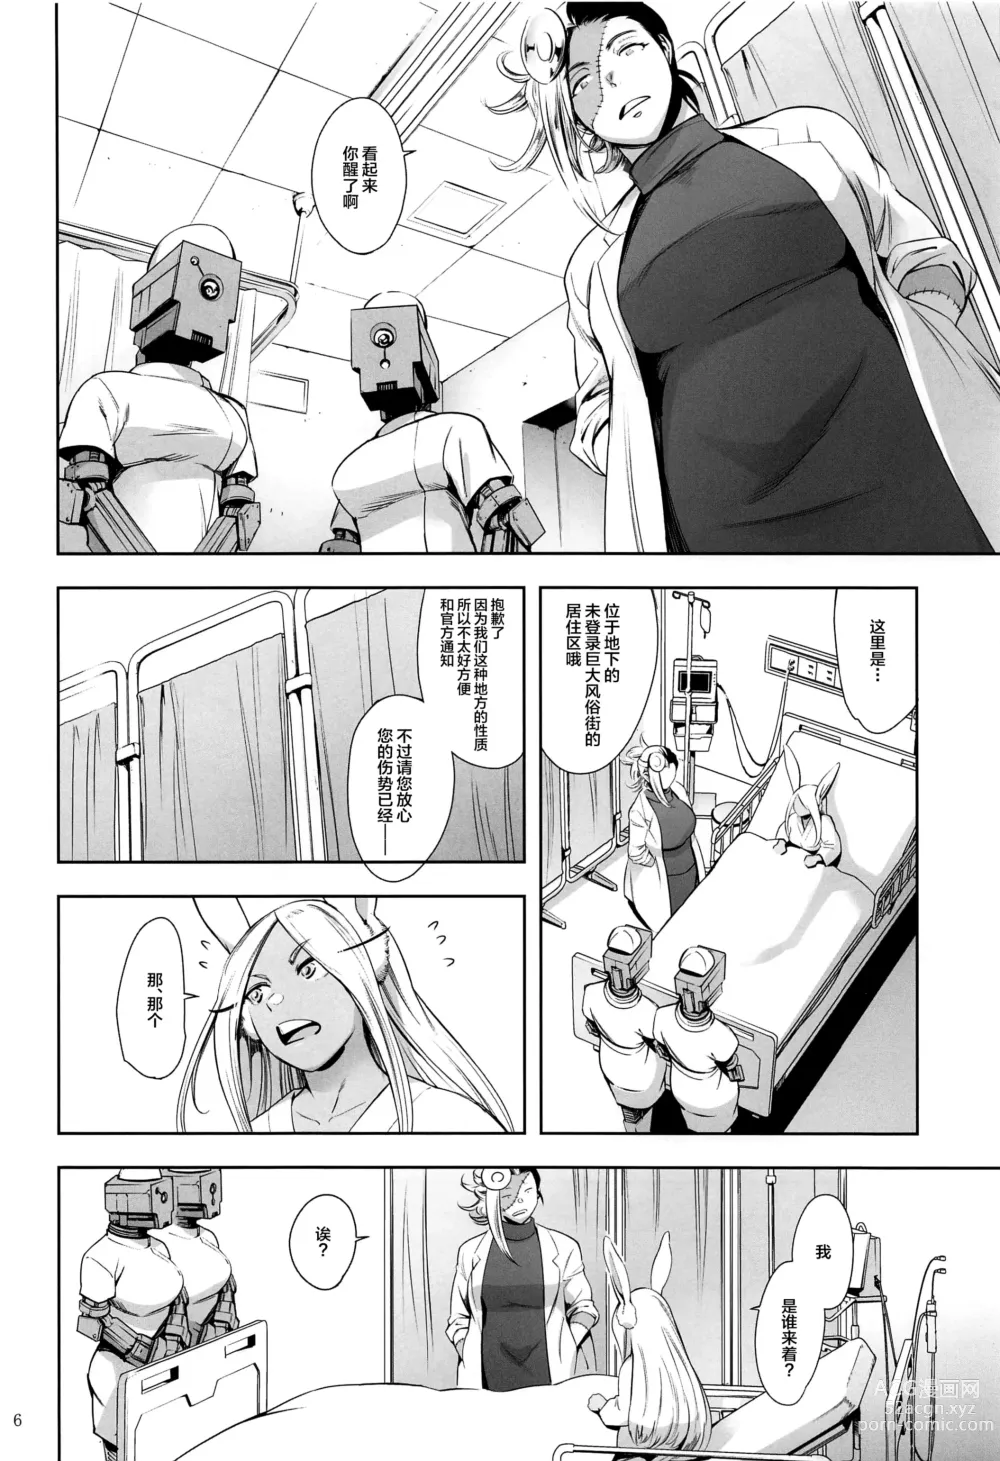 Page 5 of doujinshi Goshimei wa Usagi desu ka?